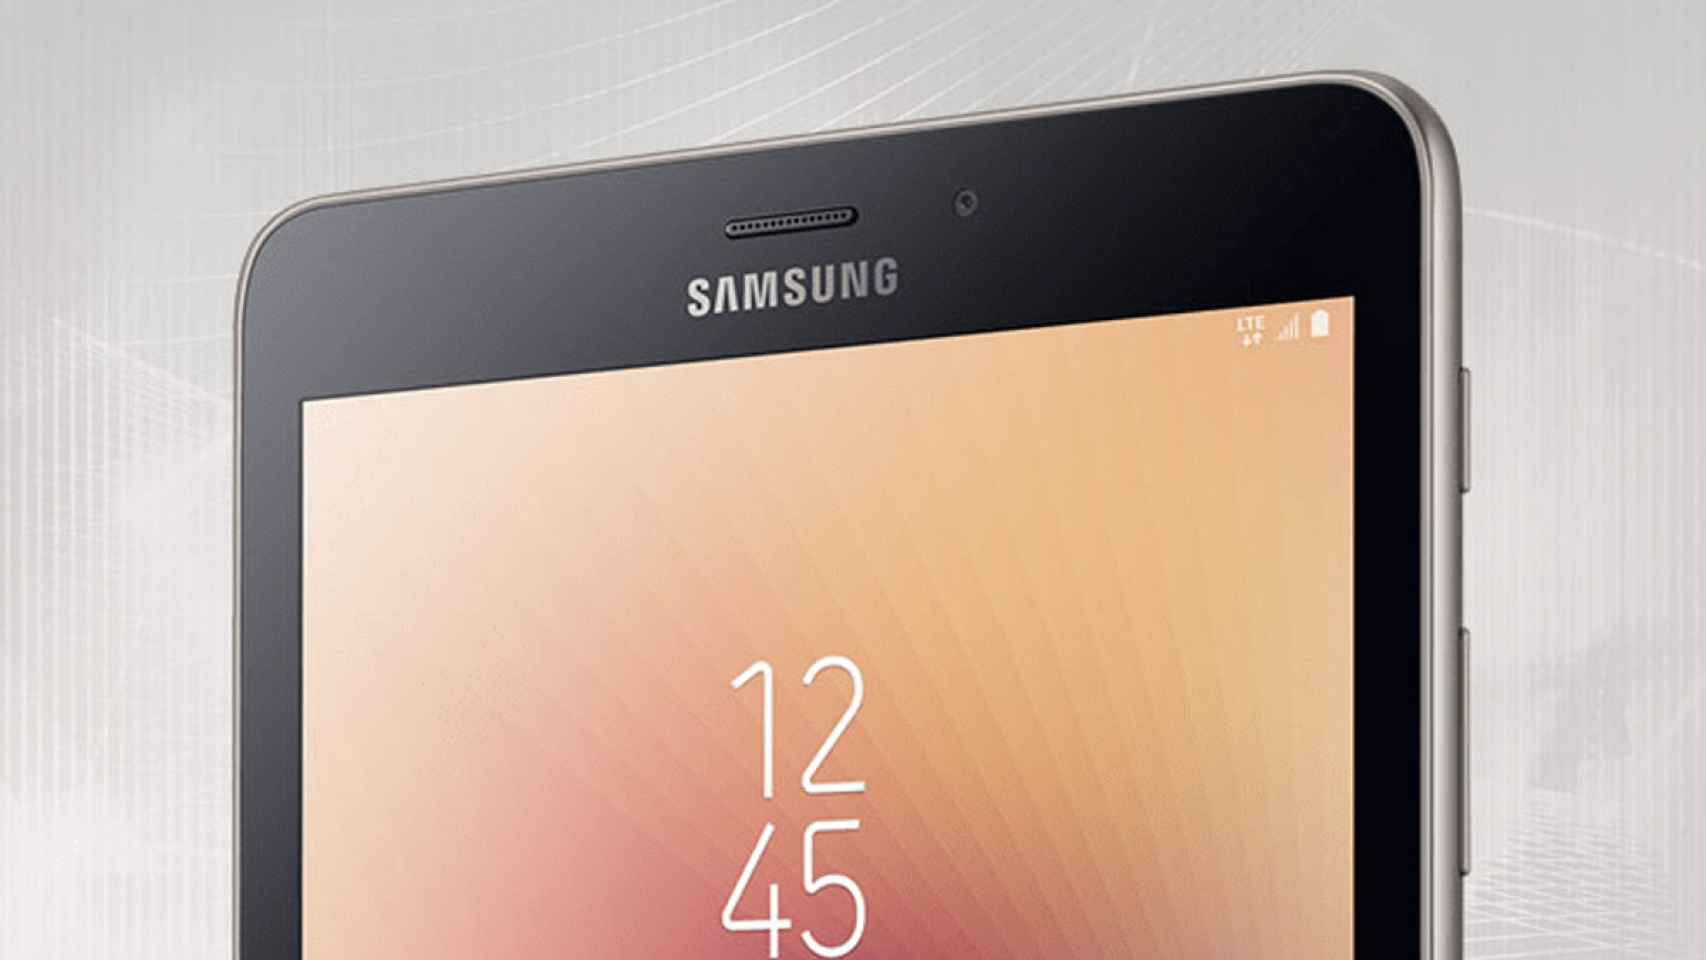 La nueva tablet Samsung Galaxy Tab A 2017 8″ es oficial